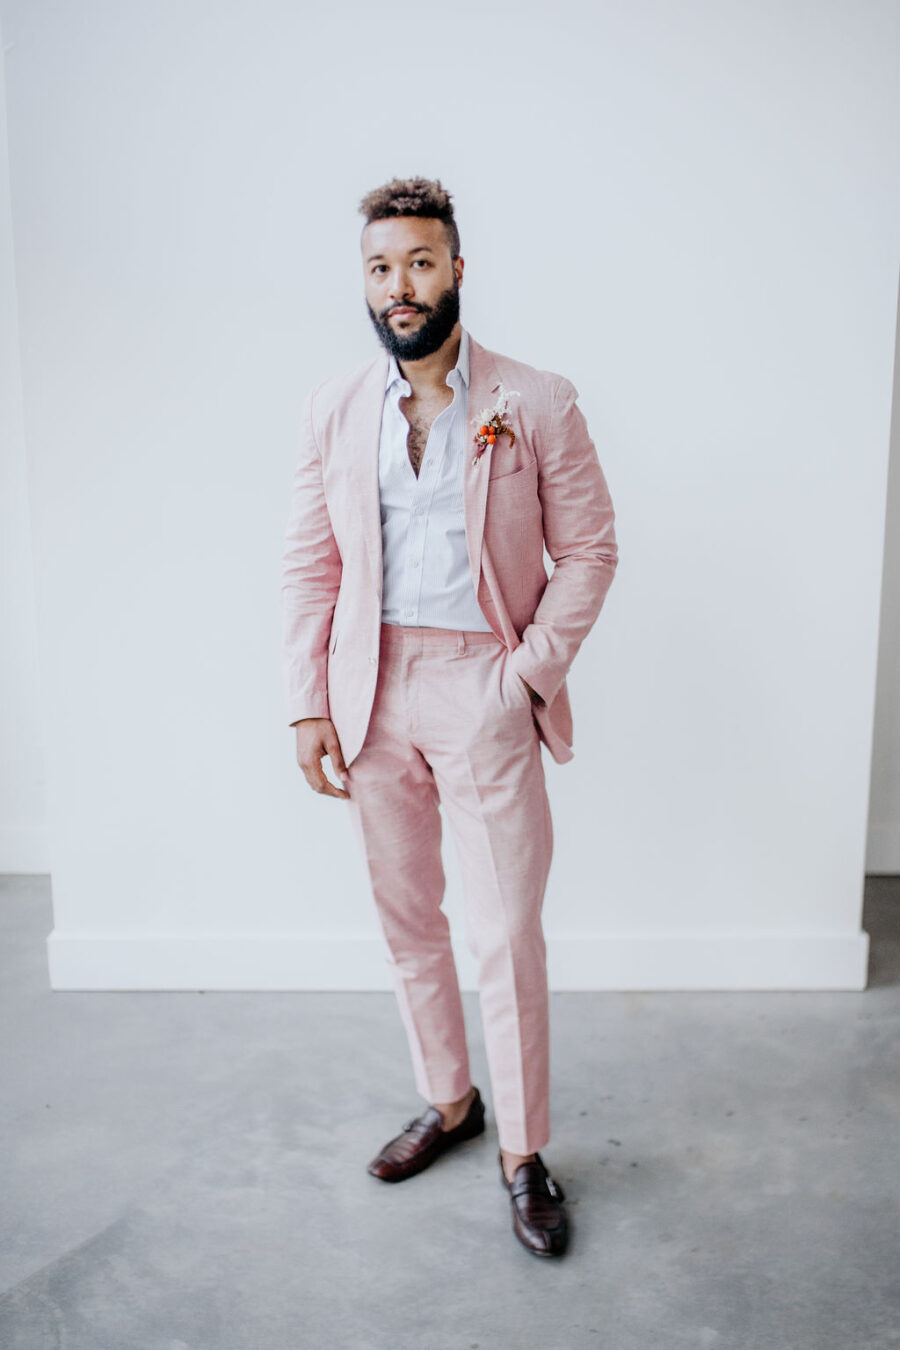 Blush Pink wedding suit